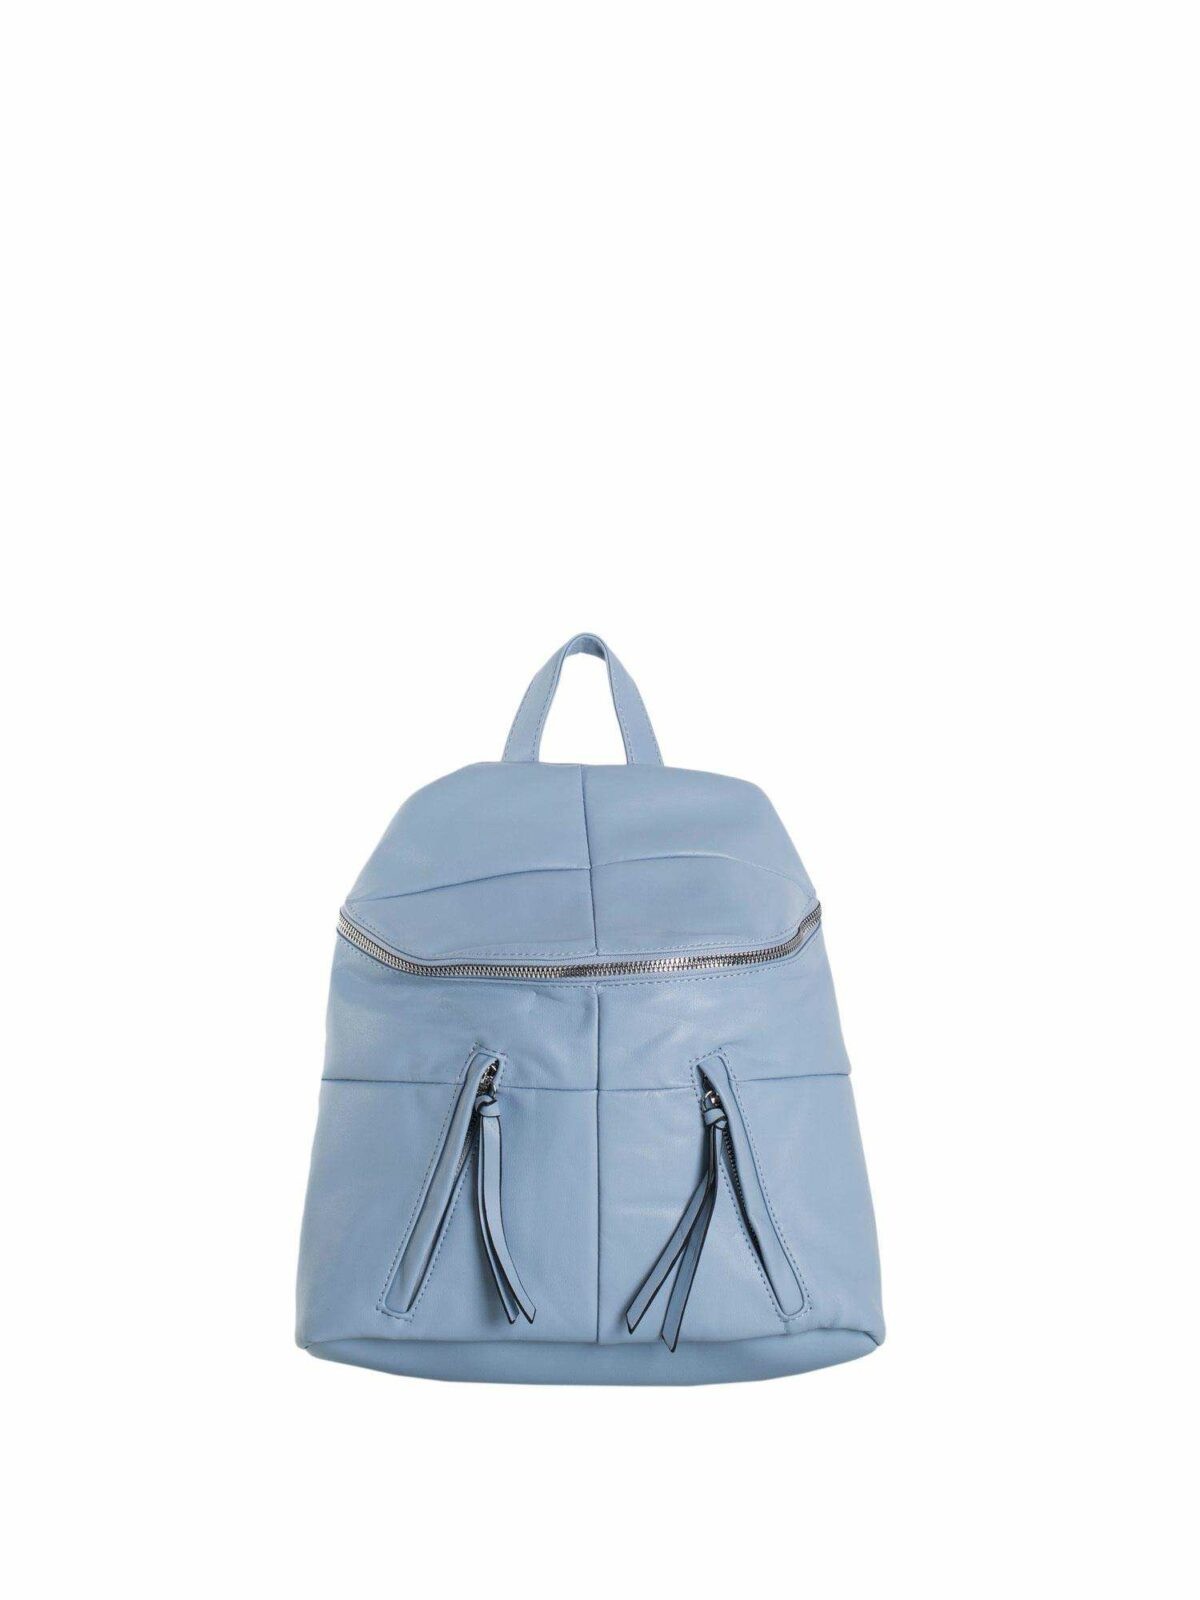 Světle modrý malý batoh vyrobený